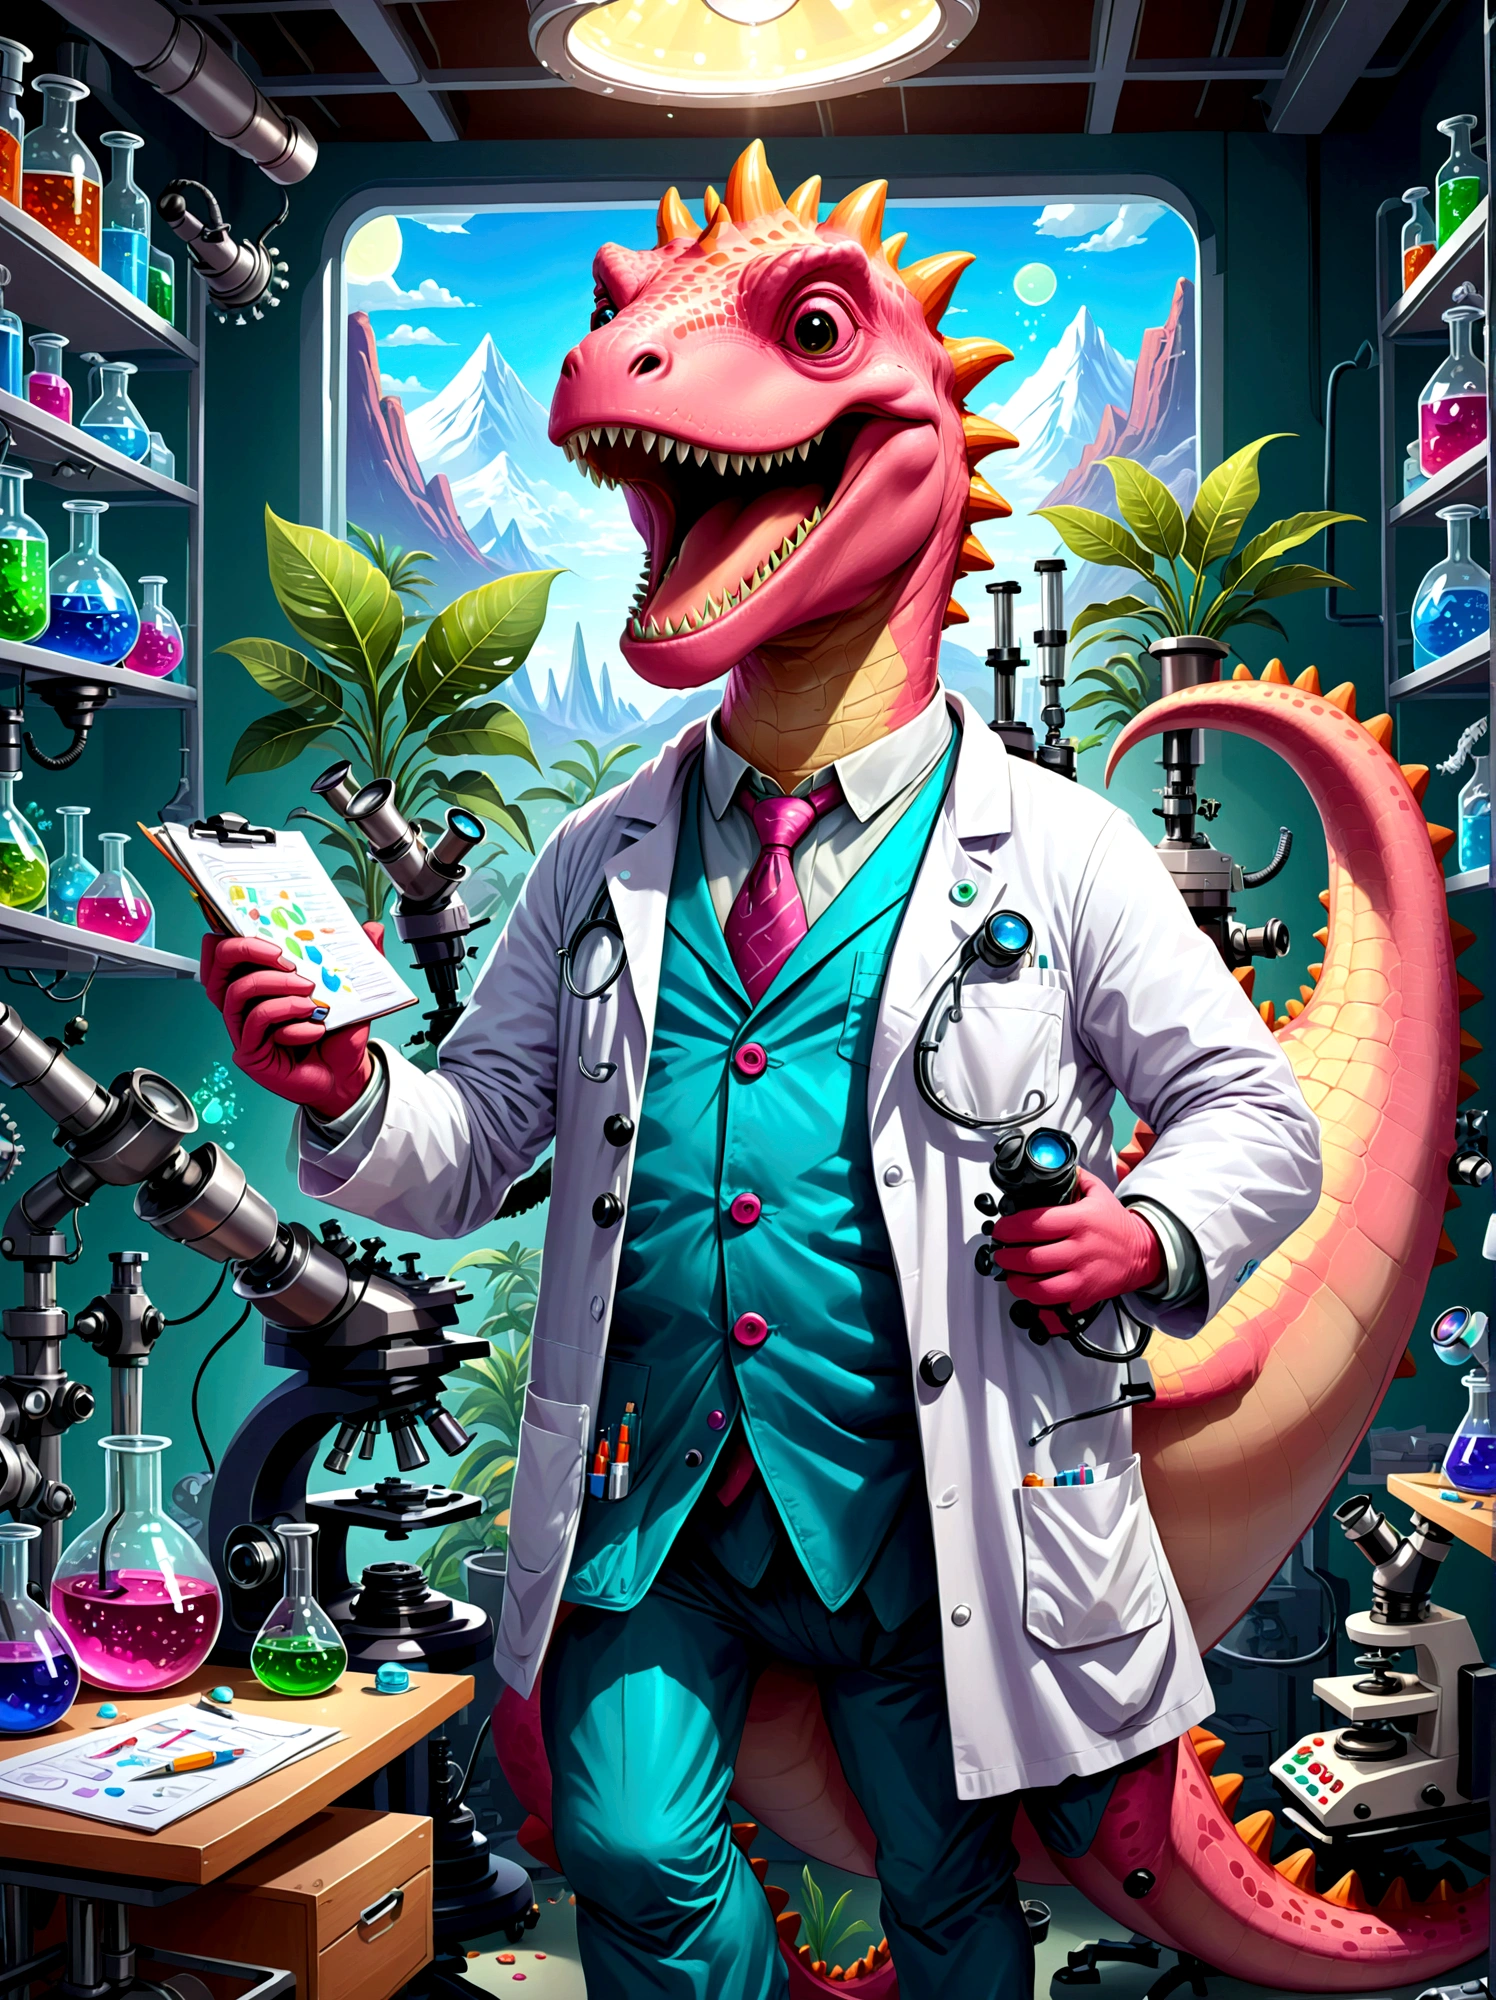 Ein rosa Dinosaurier-Charakter mit einem breiten, Breites Lächeln, als Forscher verkleidet, Sie sind in einem Labor, umgeben von wissenschaftlichen Geräten wie Mikroskopen, Becher, Diagramme und Grafiken. Der Dinosaurier trägt einen Laborkittel, Augenschutz, und hält ein Klemmbrett in der Hand, Papiere liegen verstreut herum, weist auf einen arbeitsreichen Tag hin, Die Laborumgebung ist mit Licht aus Leuchtstofflampen über der Decke gefüllt, Illustrieren Sie dies im Cartoon-Stil